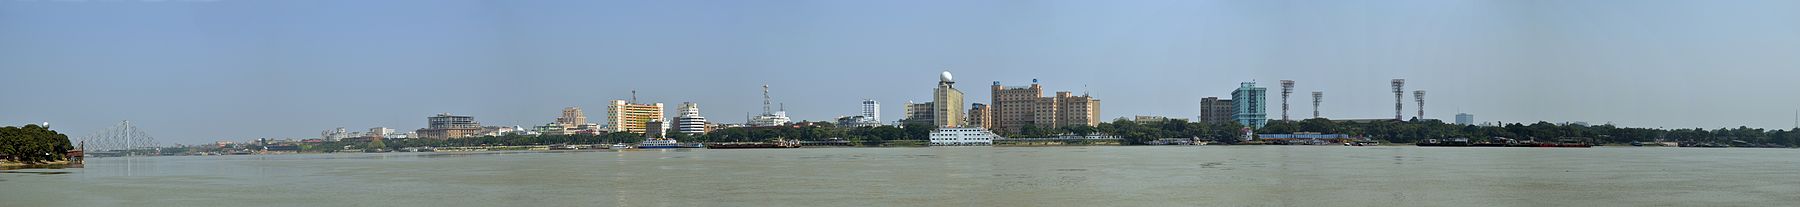 Panorama da cidade com o rio Hooghly.